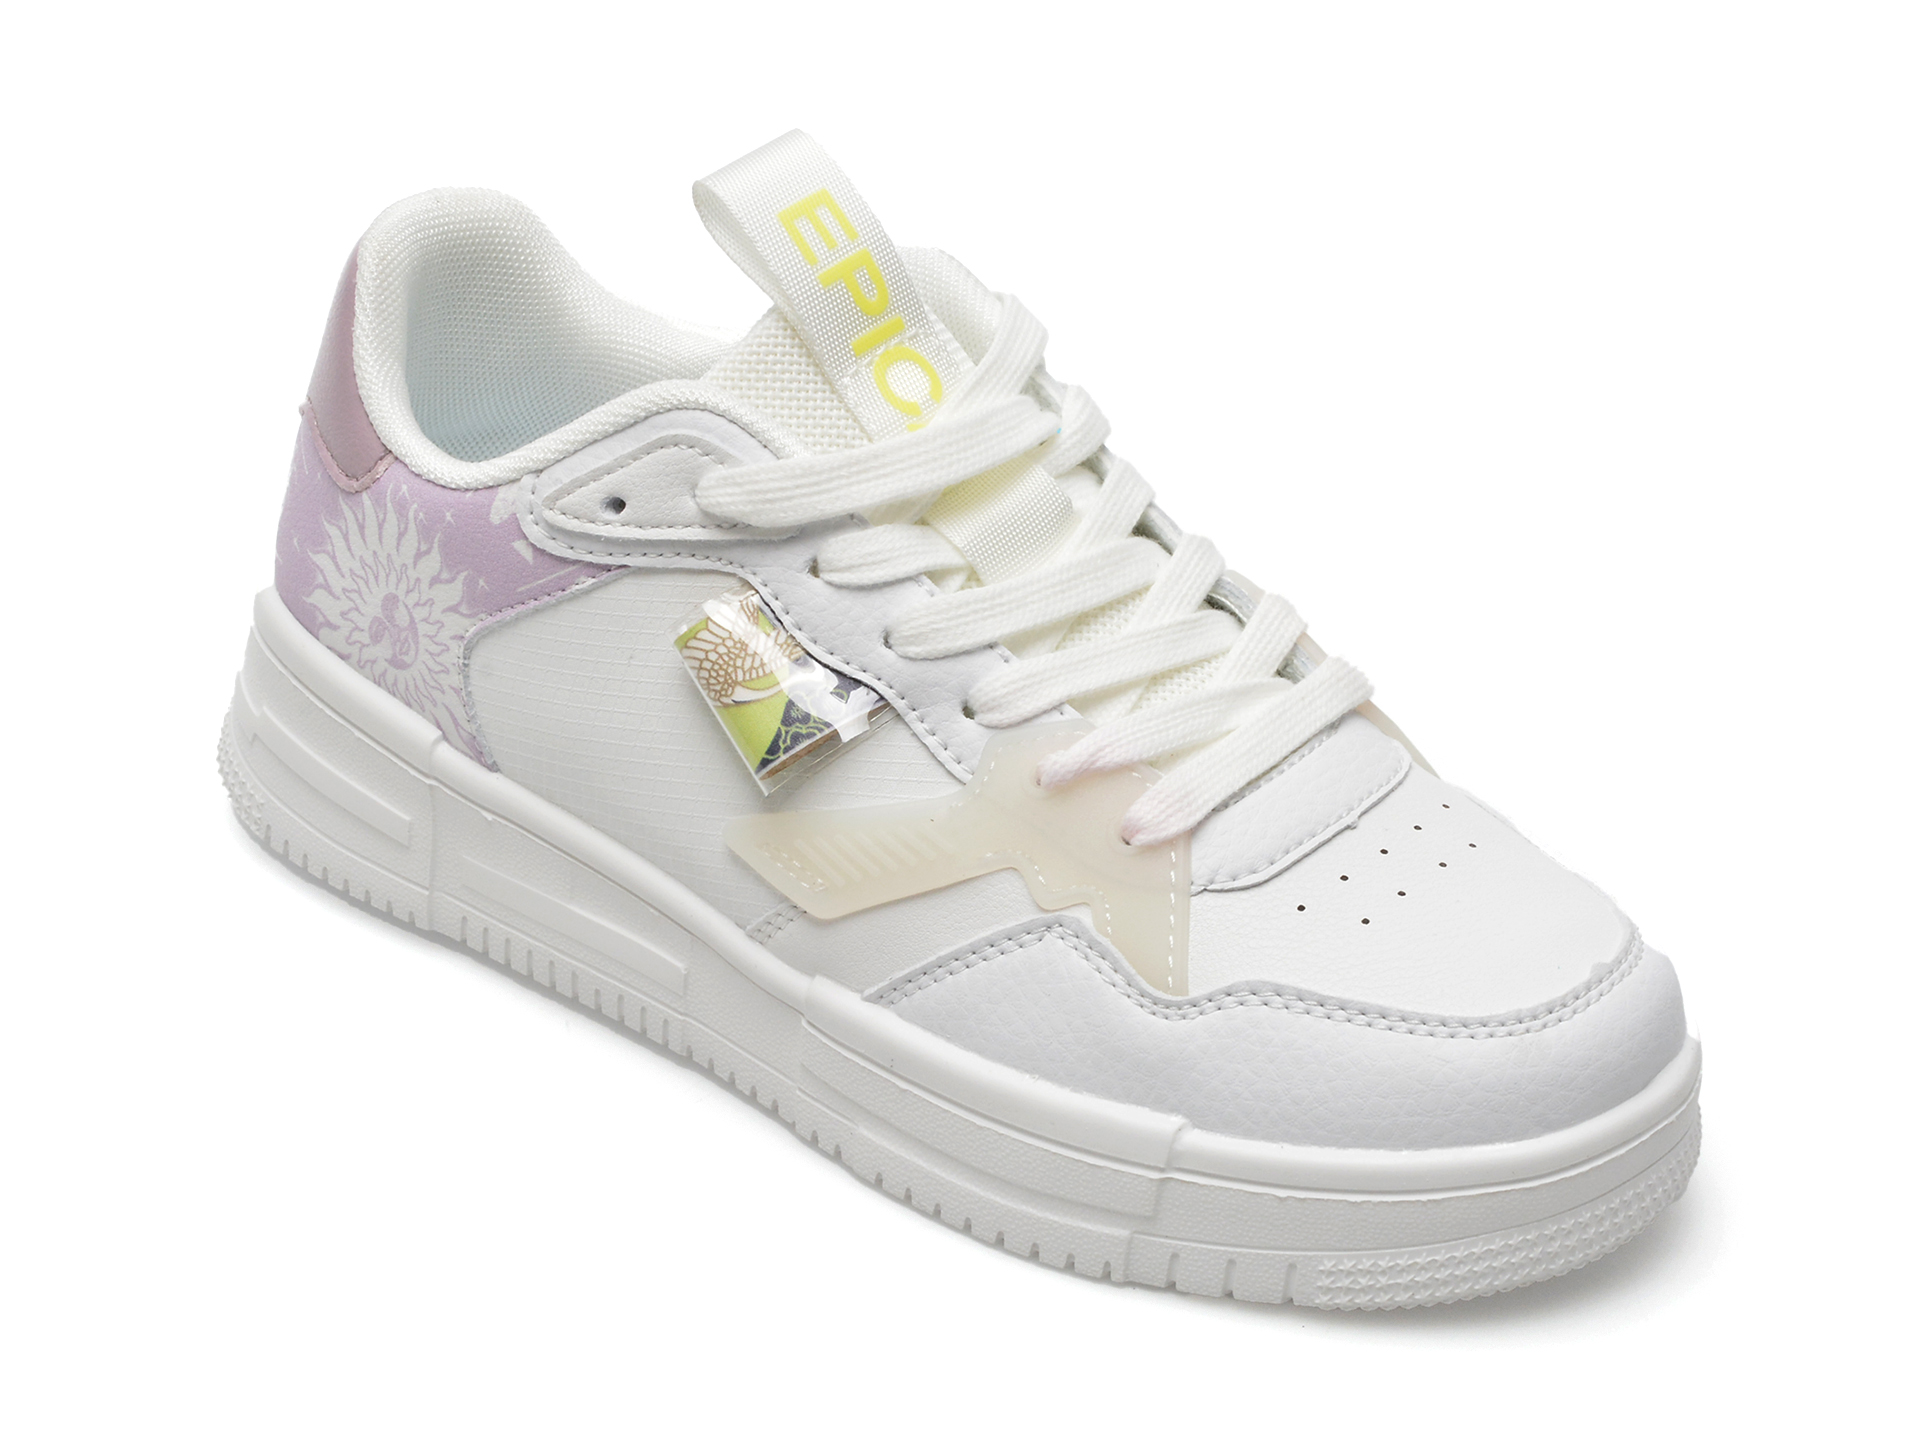 Pantofi EPICA albi, MJ2238, din piele ecologica Answear 2023-06-09